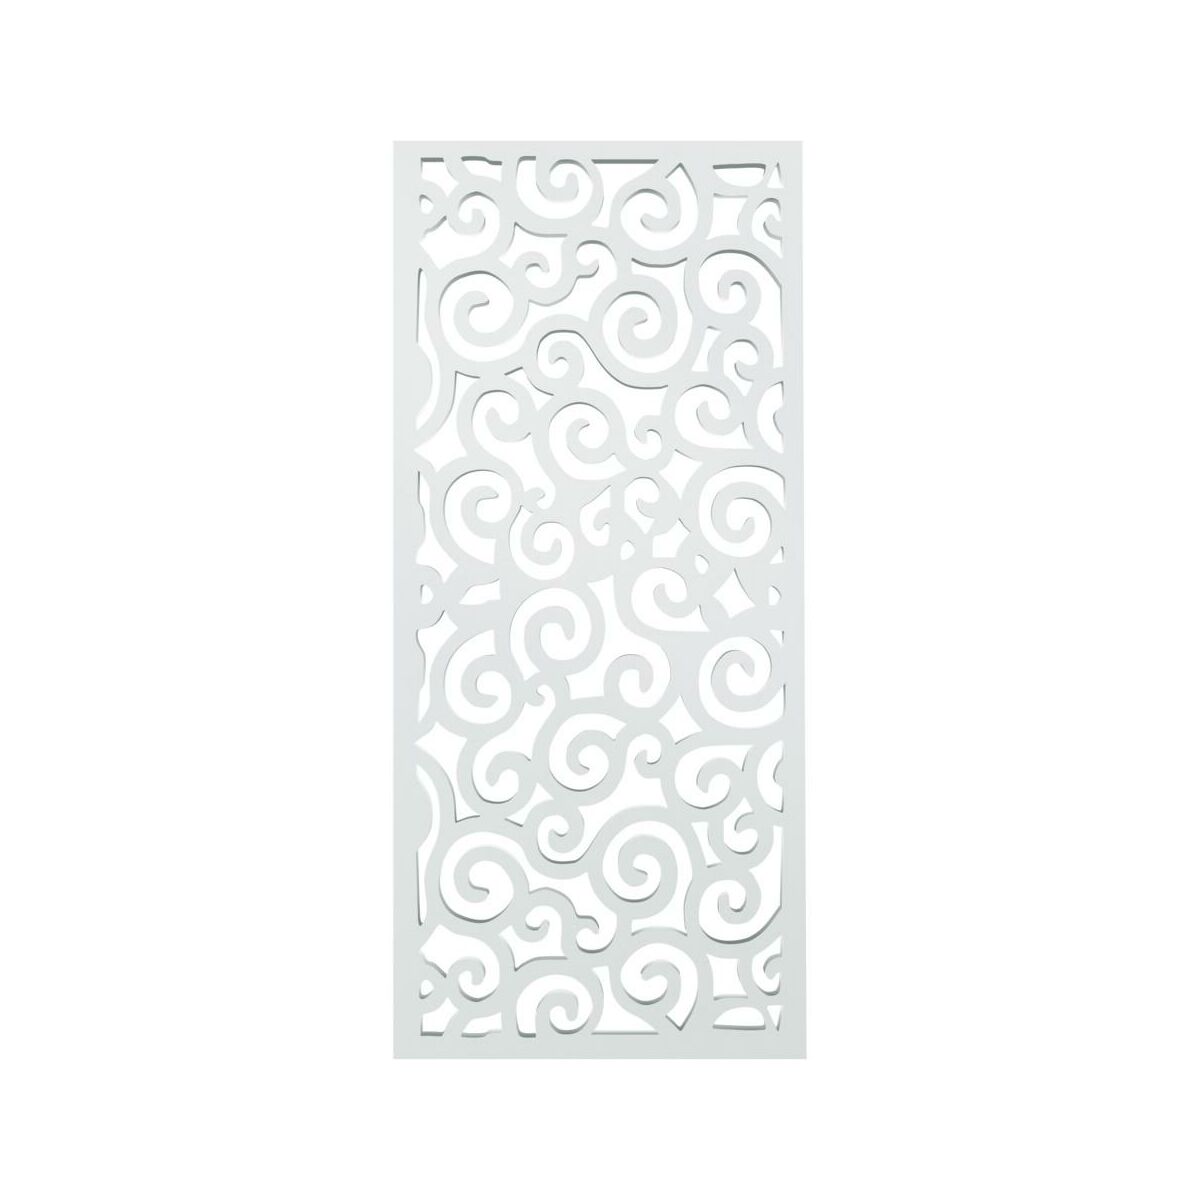 Panel ażurowy Tradycyjny Biały półmatowy 90 x 200 cm